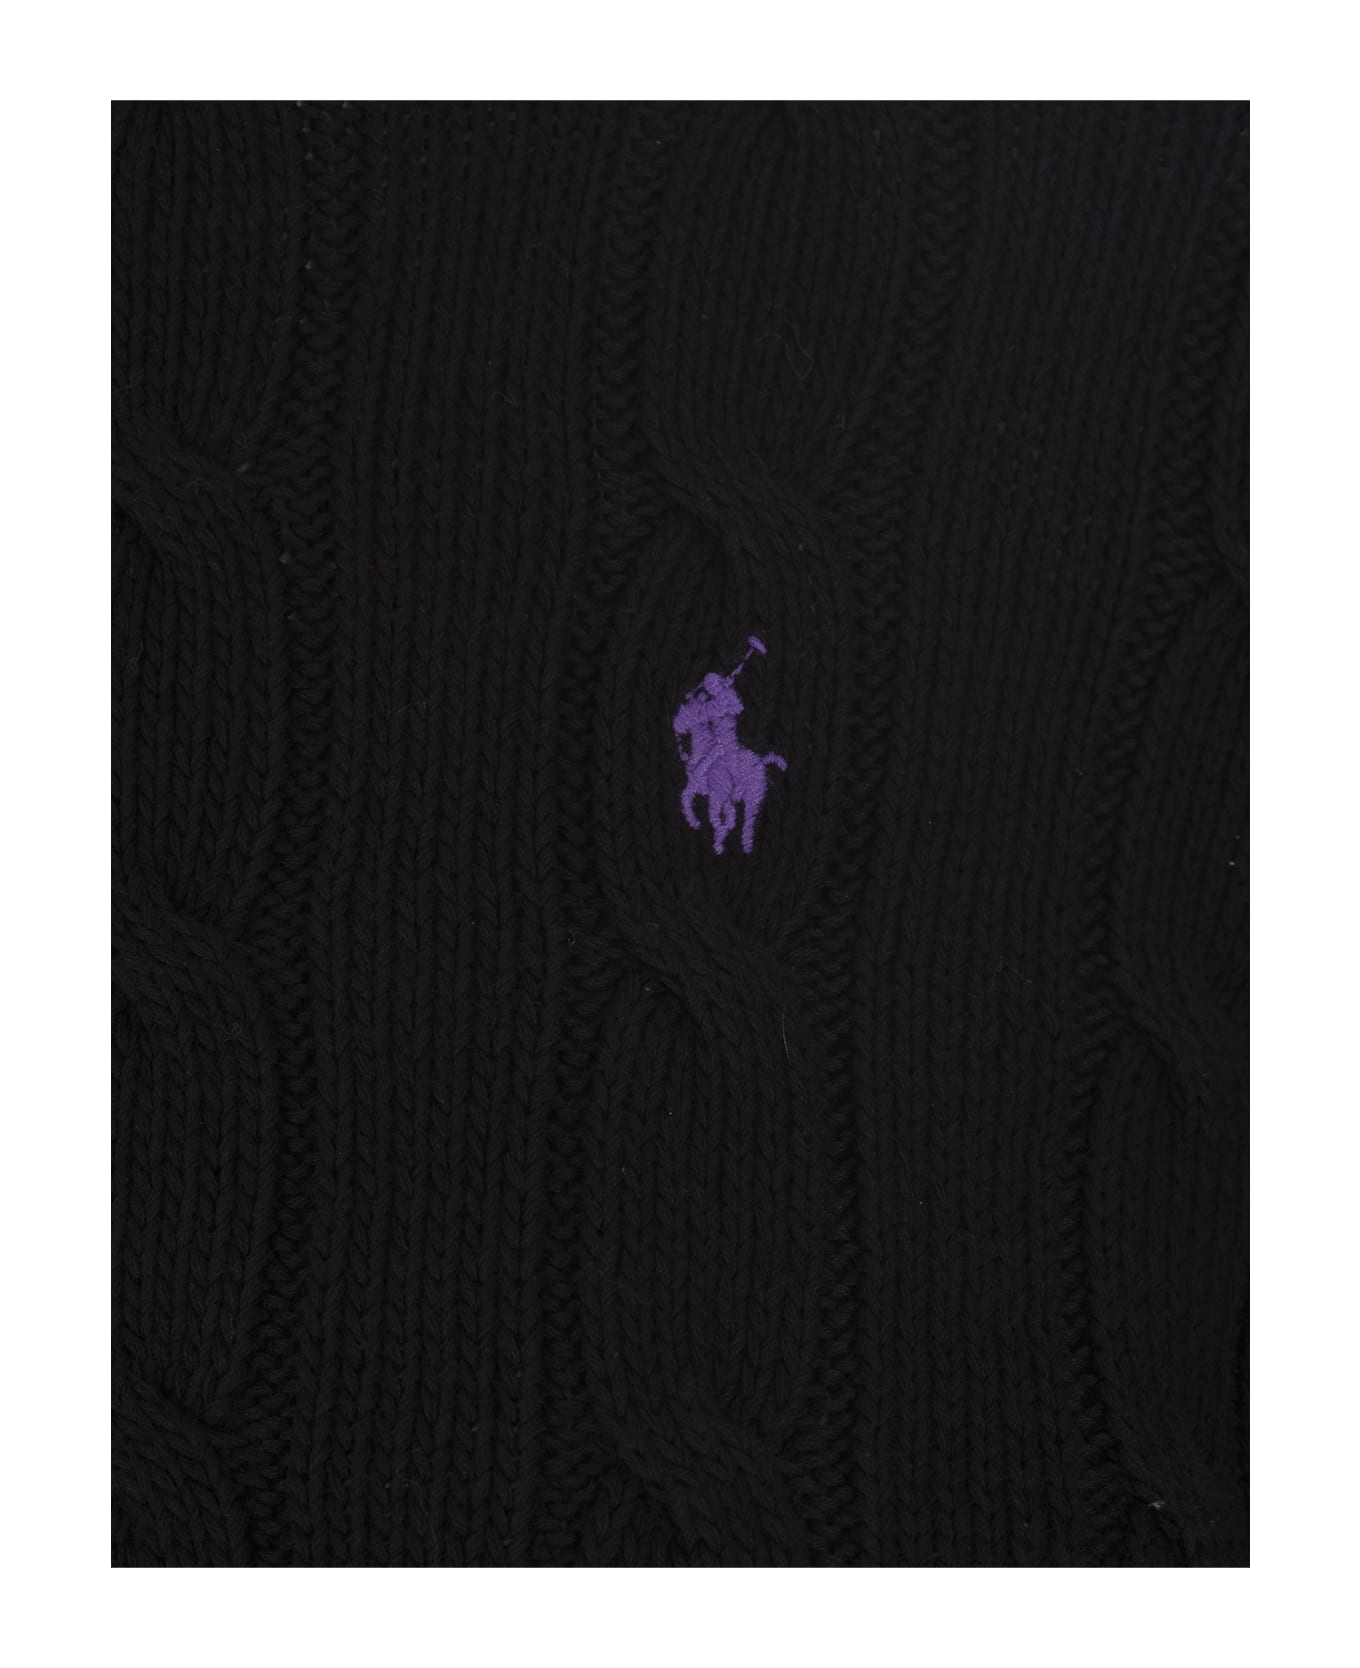 Ralph Lauren Crew Neck Sweater In Black Braided Knit - Black ニットウェア